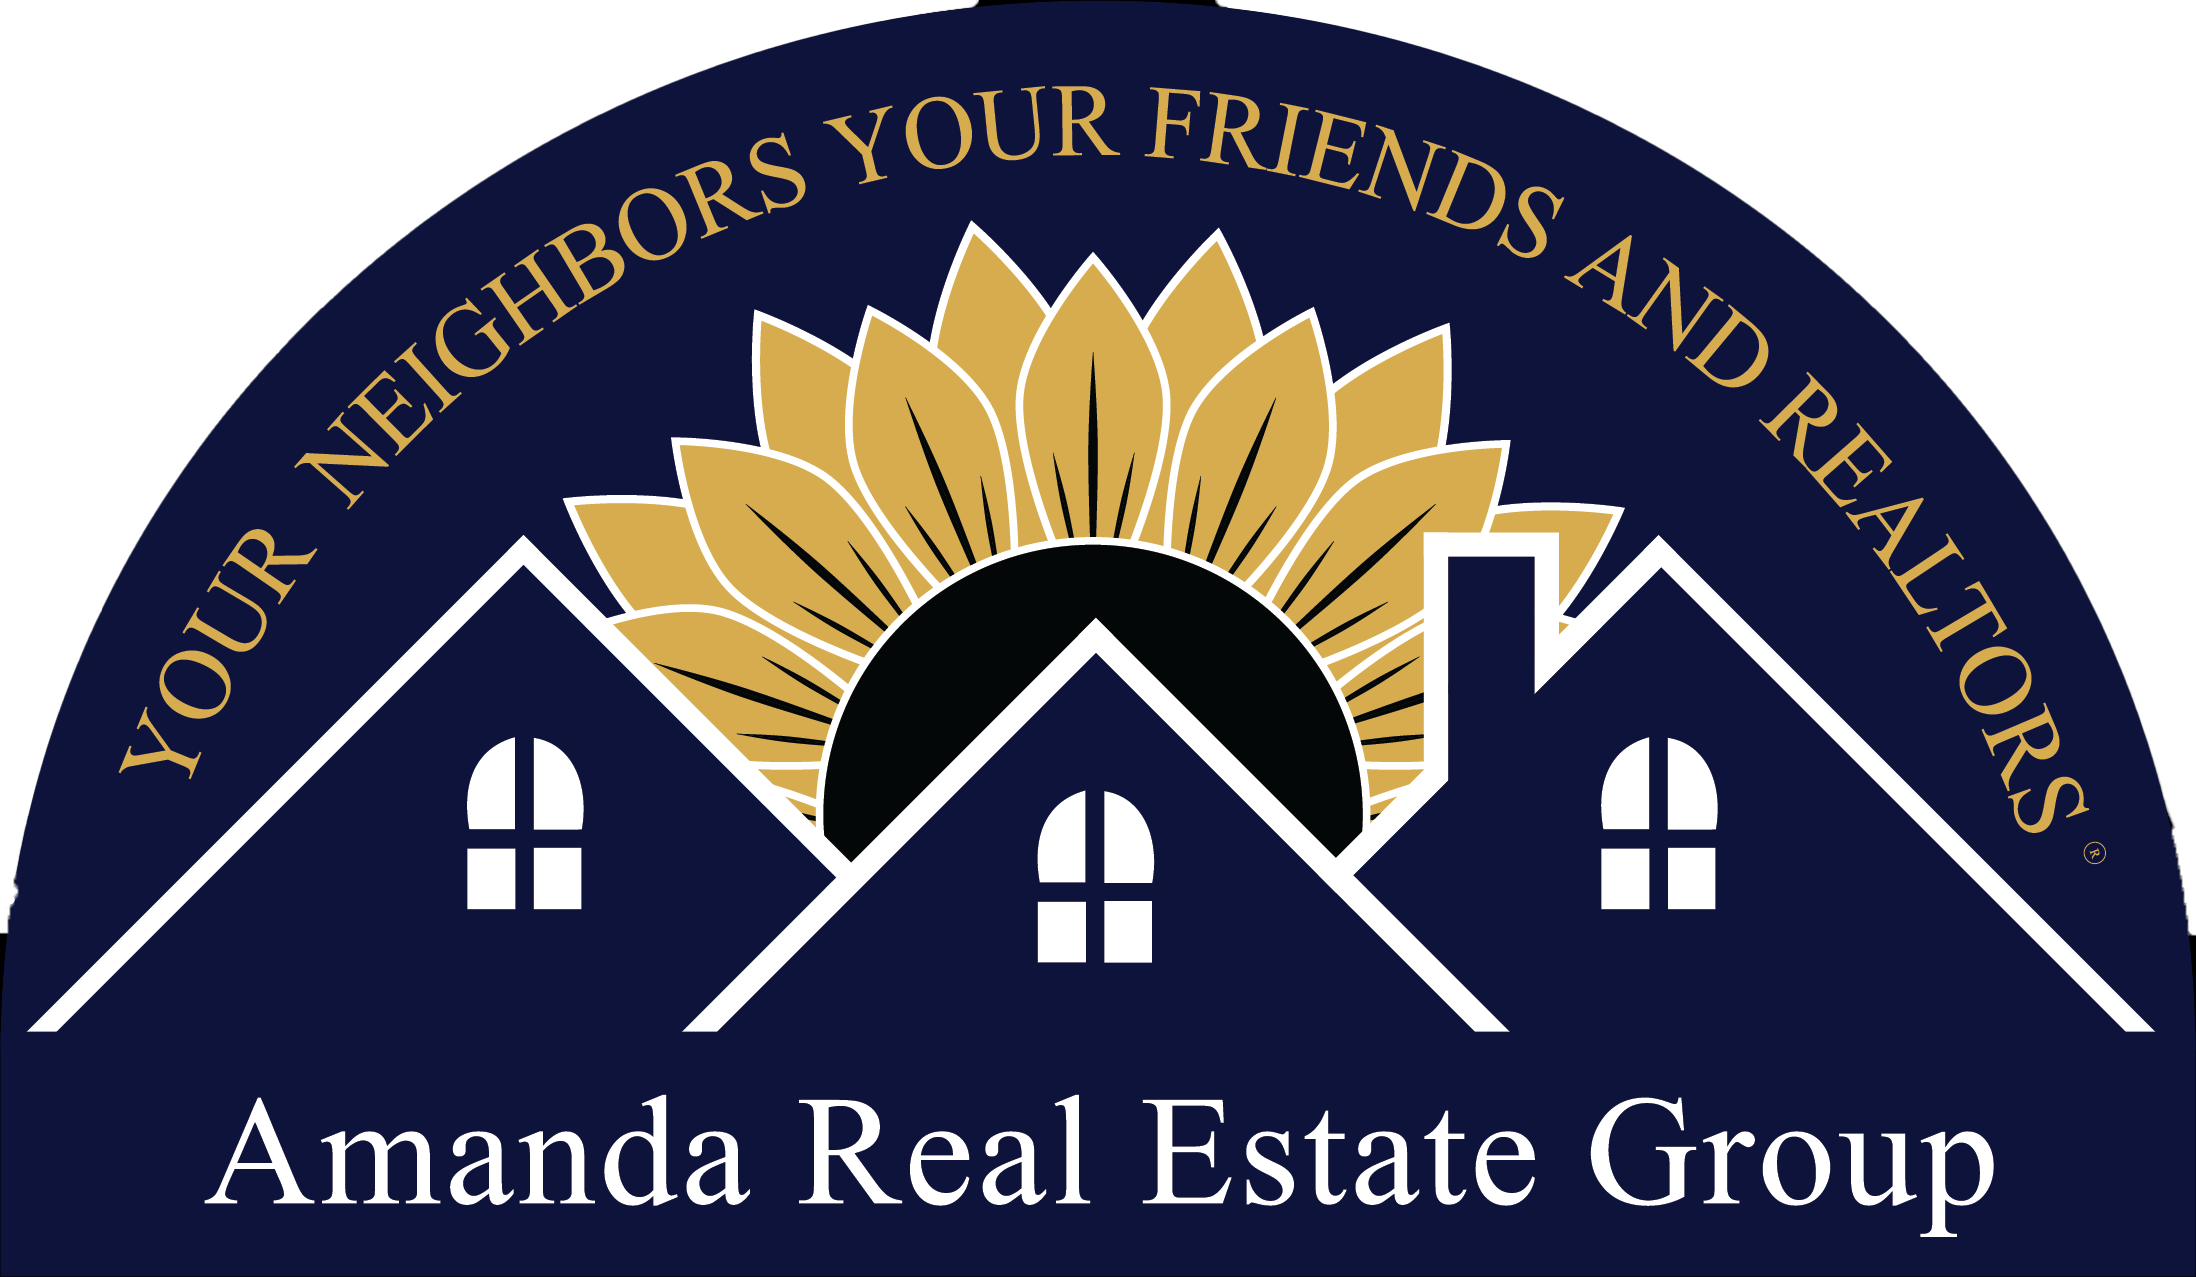 Amanda Real Estate Group, LLC